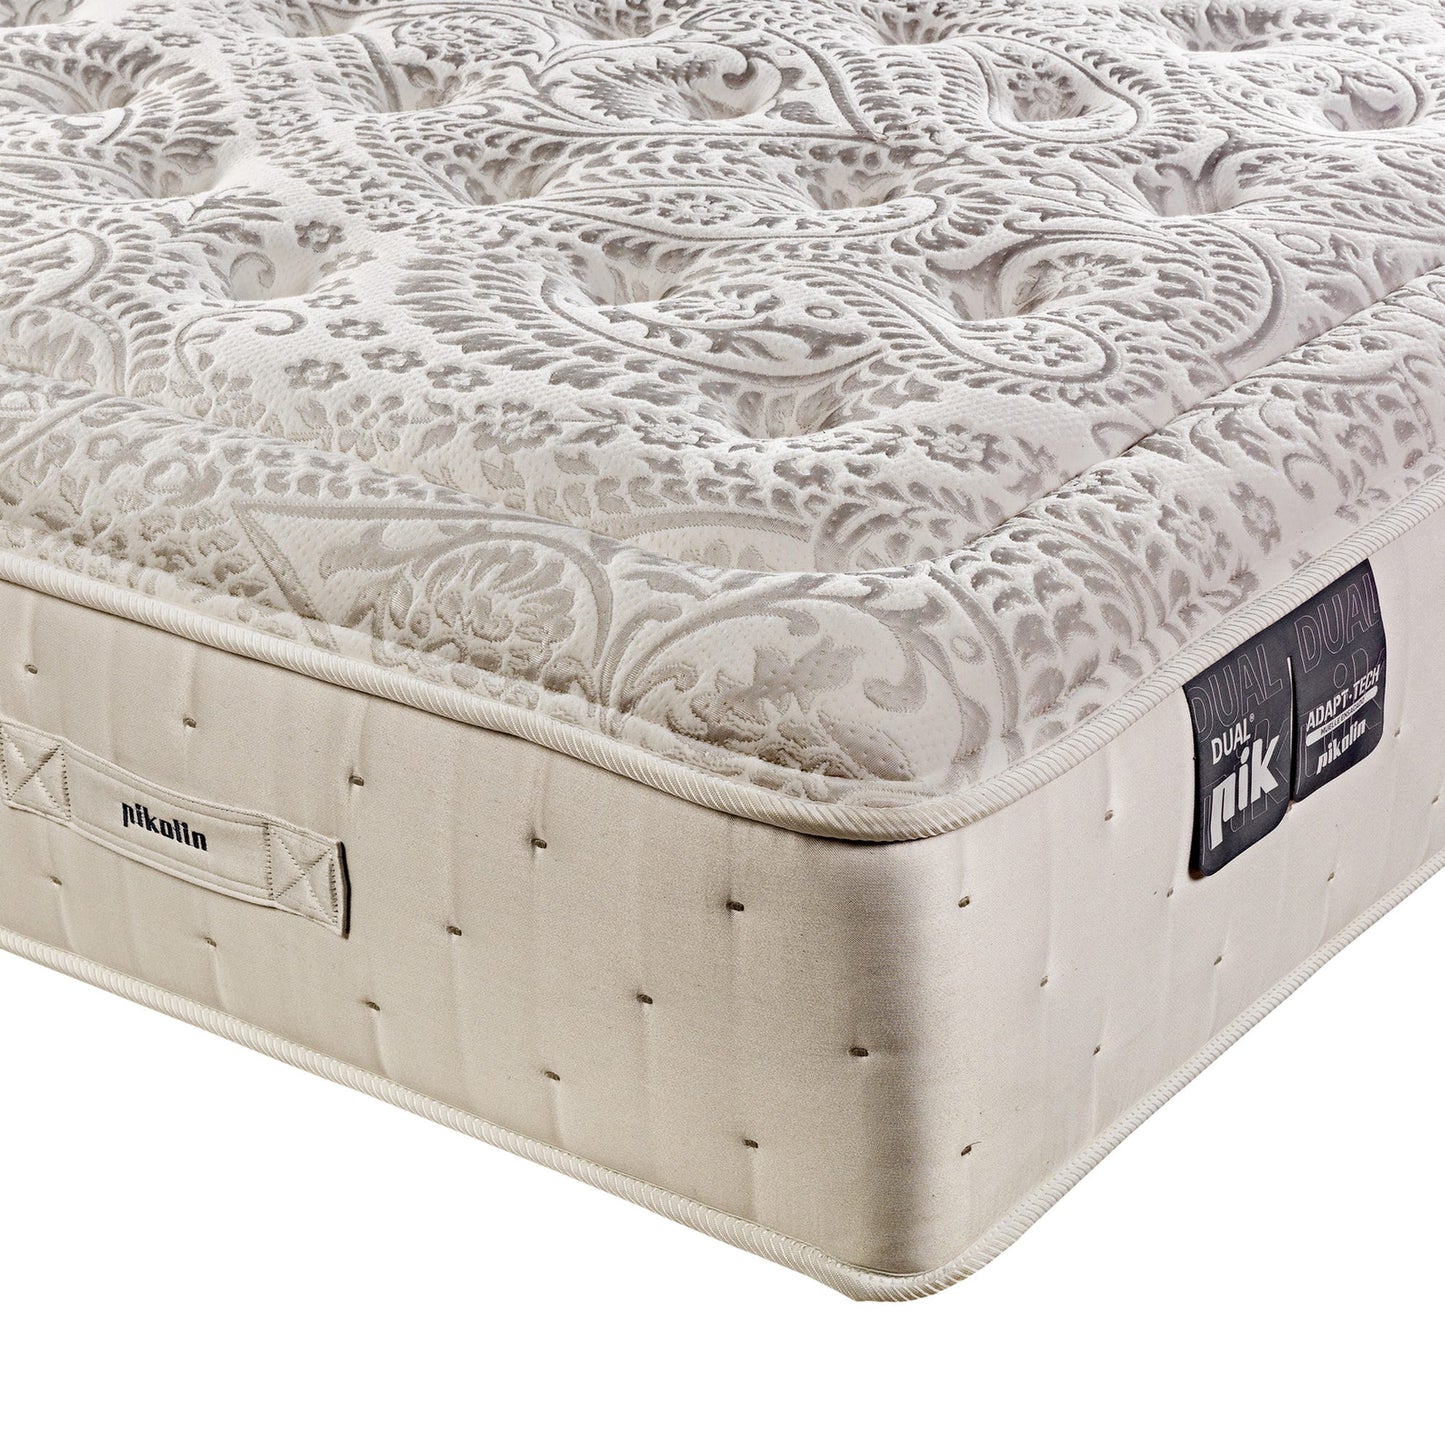 El mejor colchón con confort personalizable con dos niveles de firmeza - DualPIK DUAL - 200x190